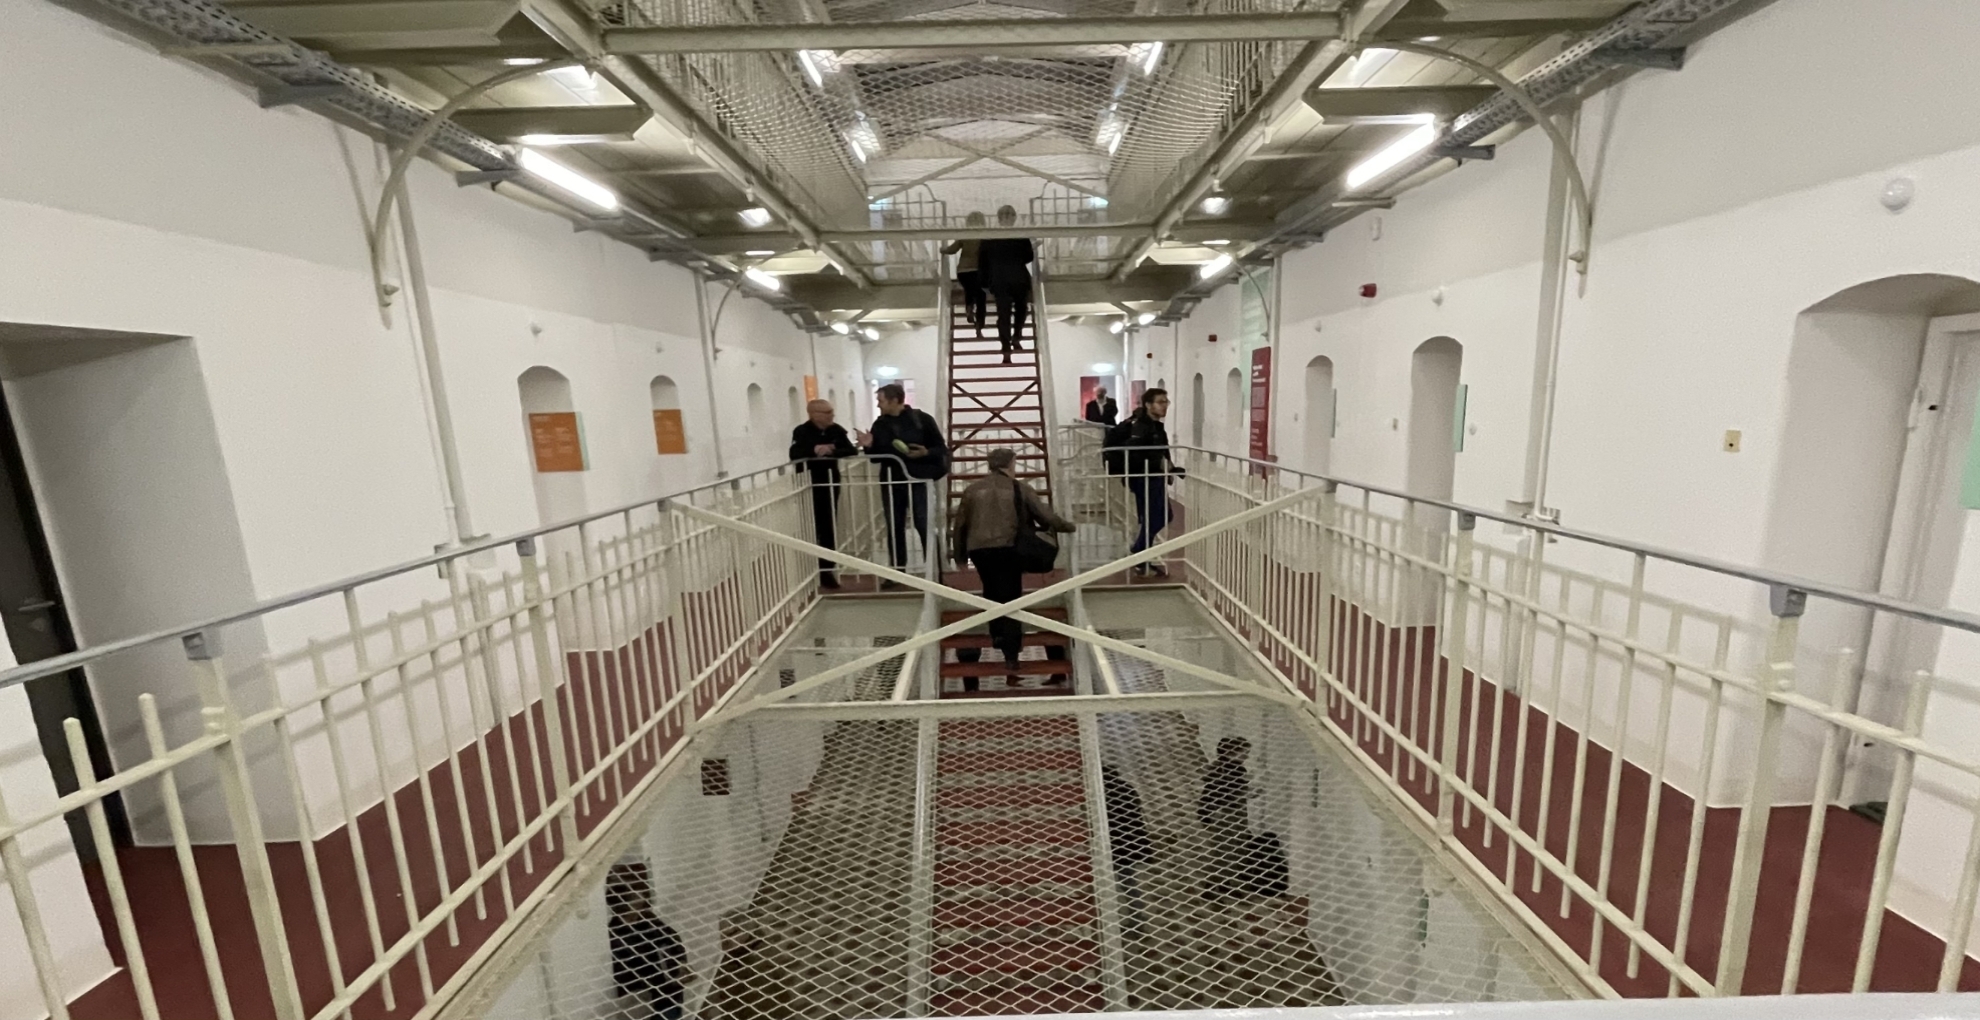 Uroczyste otwarcie więzienia Kaßberg – miejsca nauki i pamięci